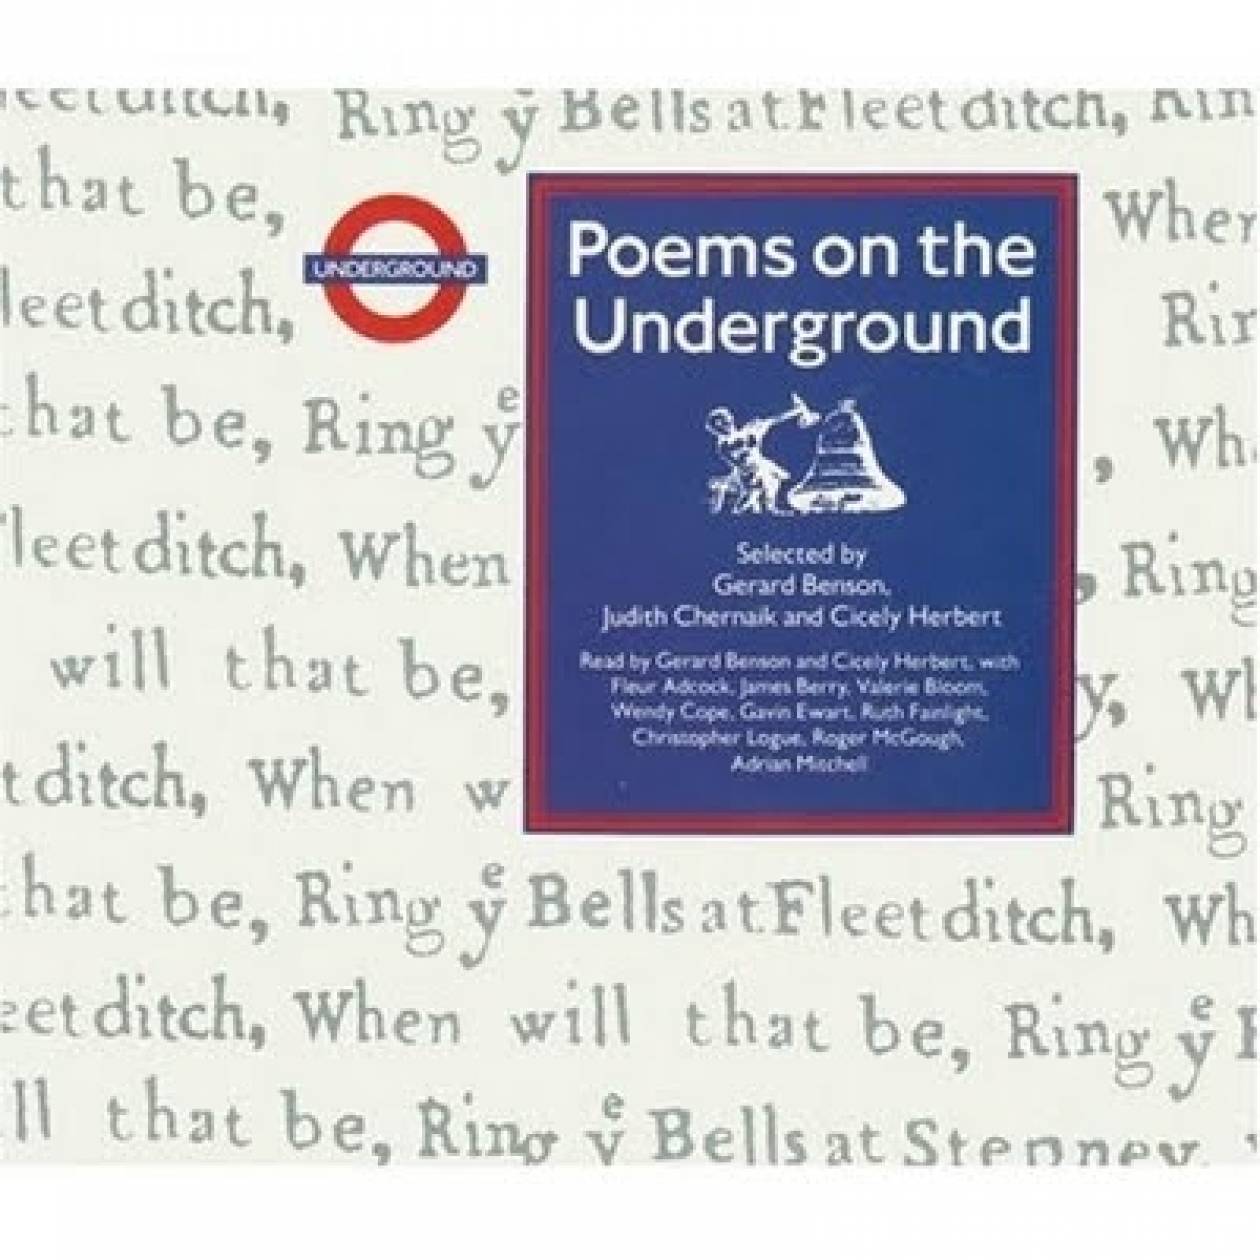 Βρετανία: Ελληνικοί στίχοι στο μετρό του Λονδίνου